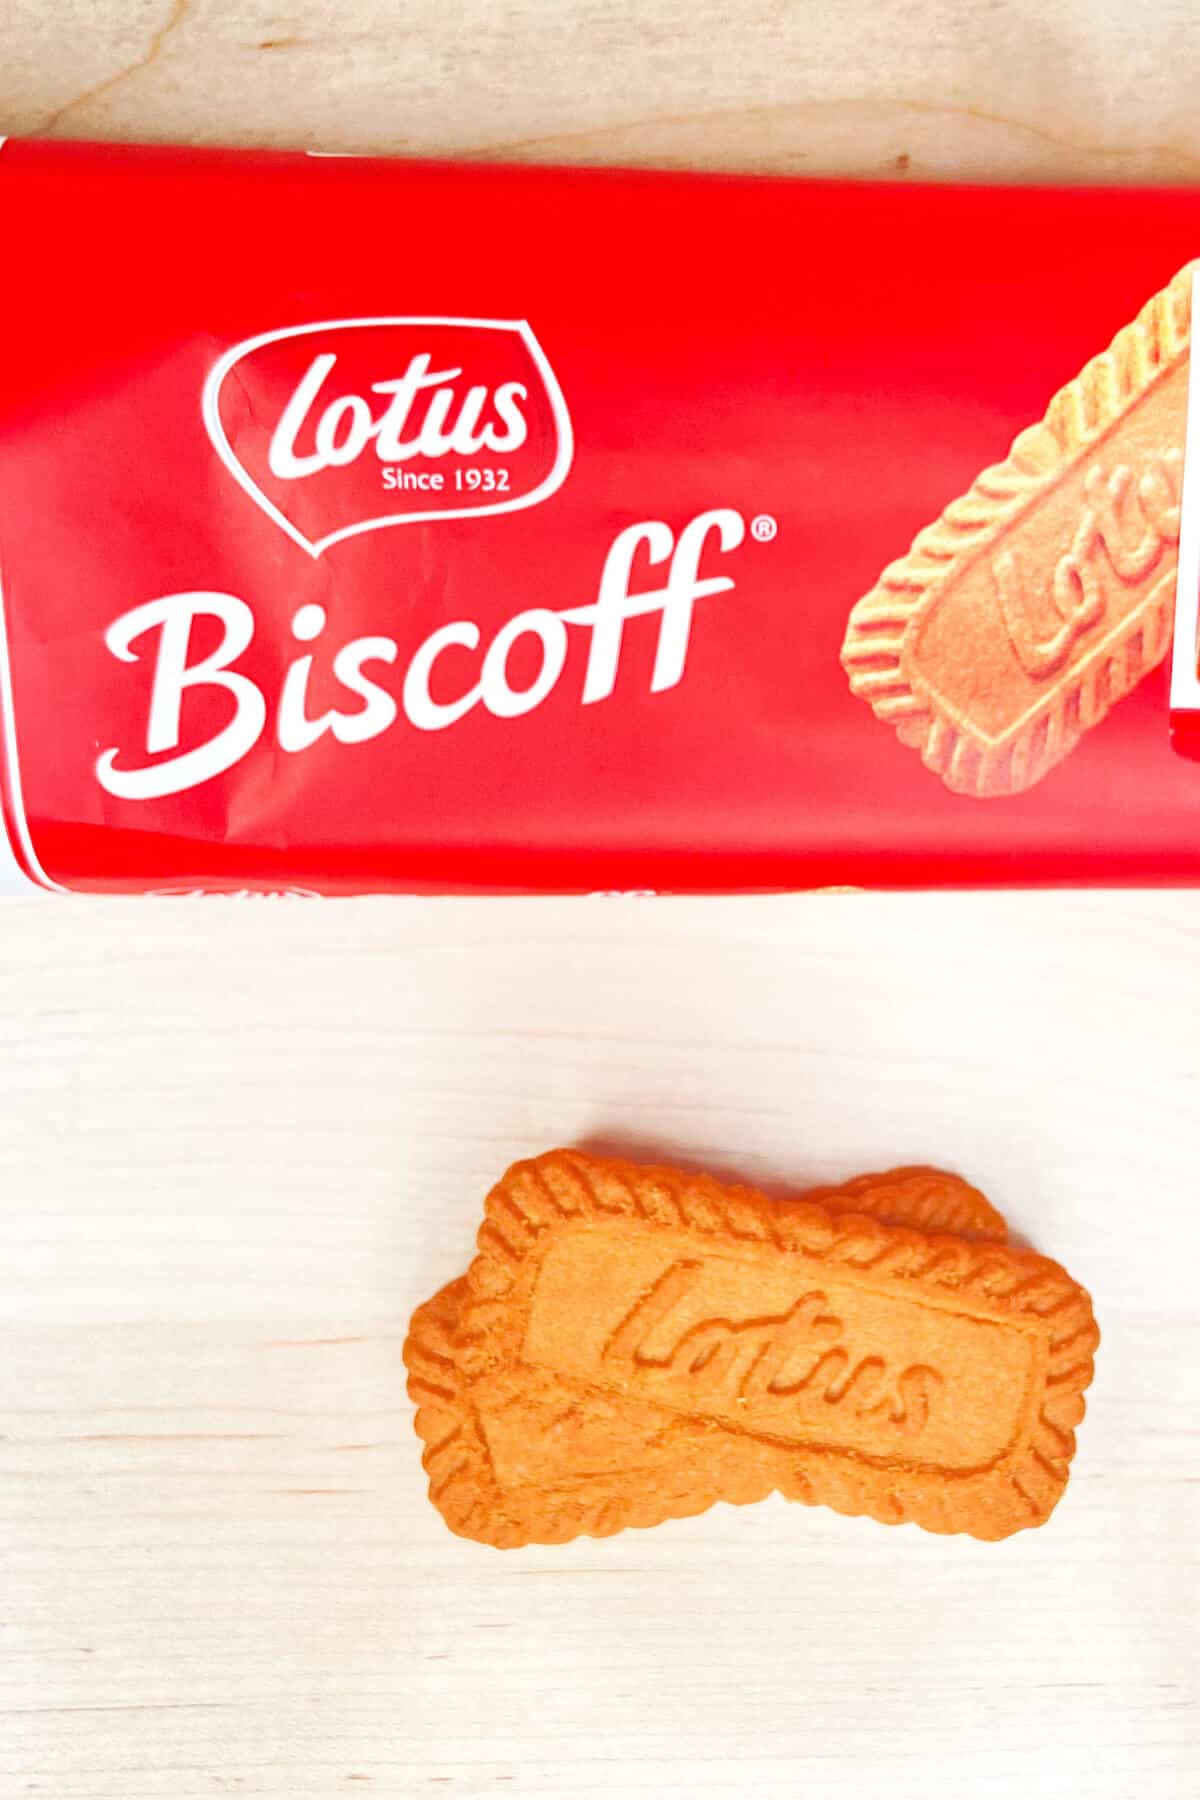 Lotus biscoff cookie package.